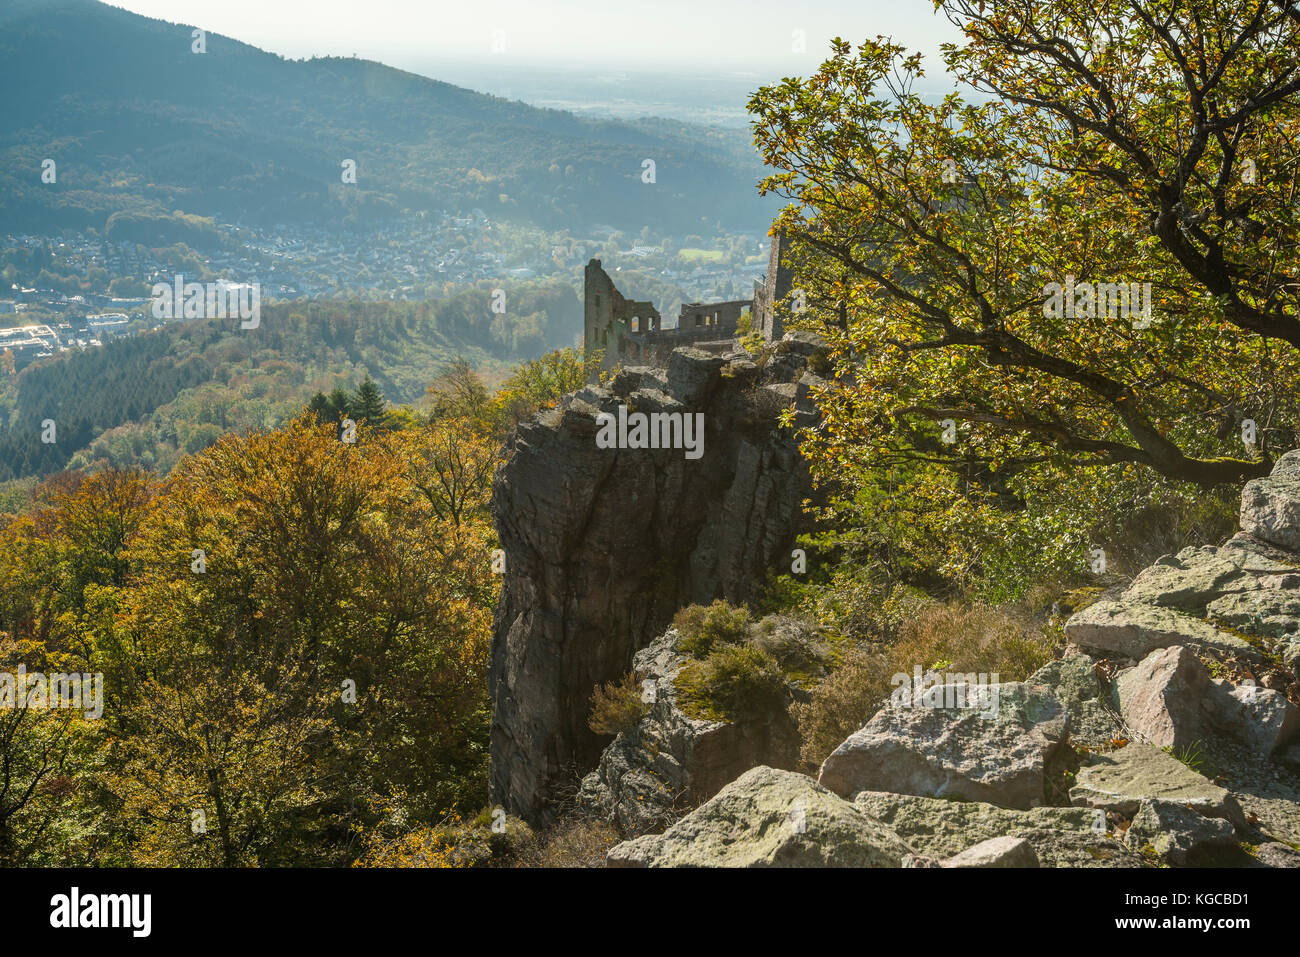 Guettez la ville de Baden-Baden et la ruine du vieux château Hohenbaden, sur le rocher de Battert au-dessus de la ville thermale de Baden-Baden en automne, Allemagne Banque D'Images